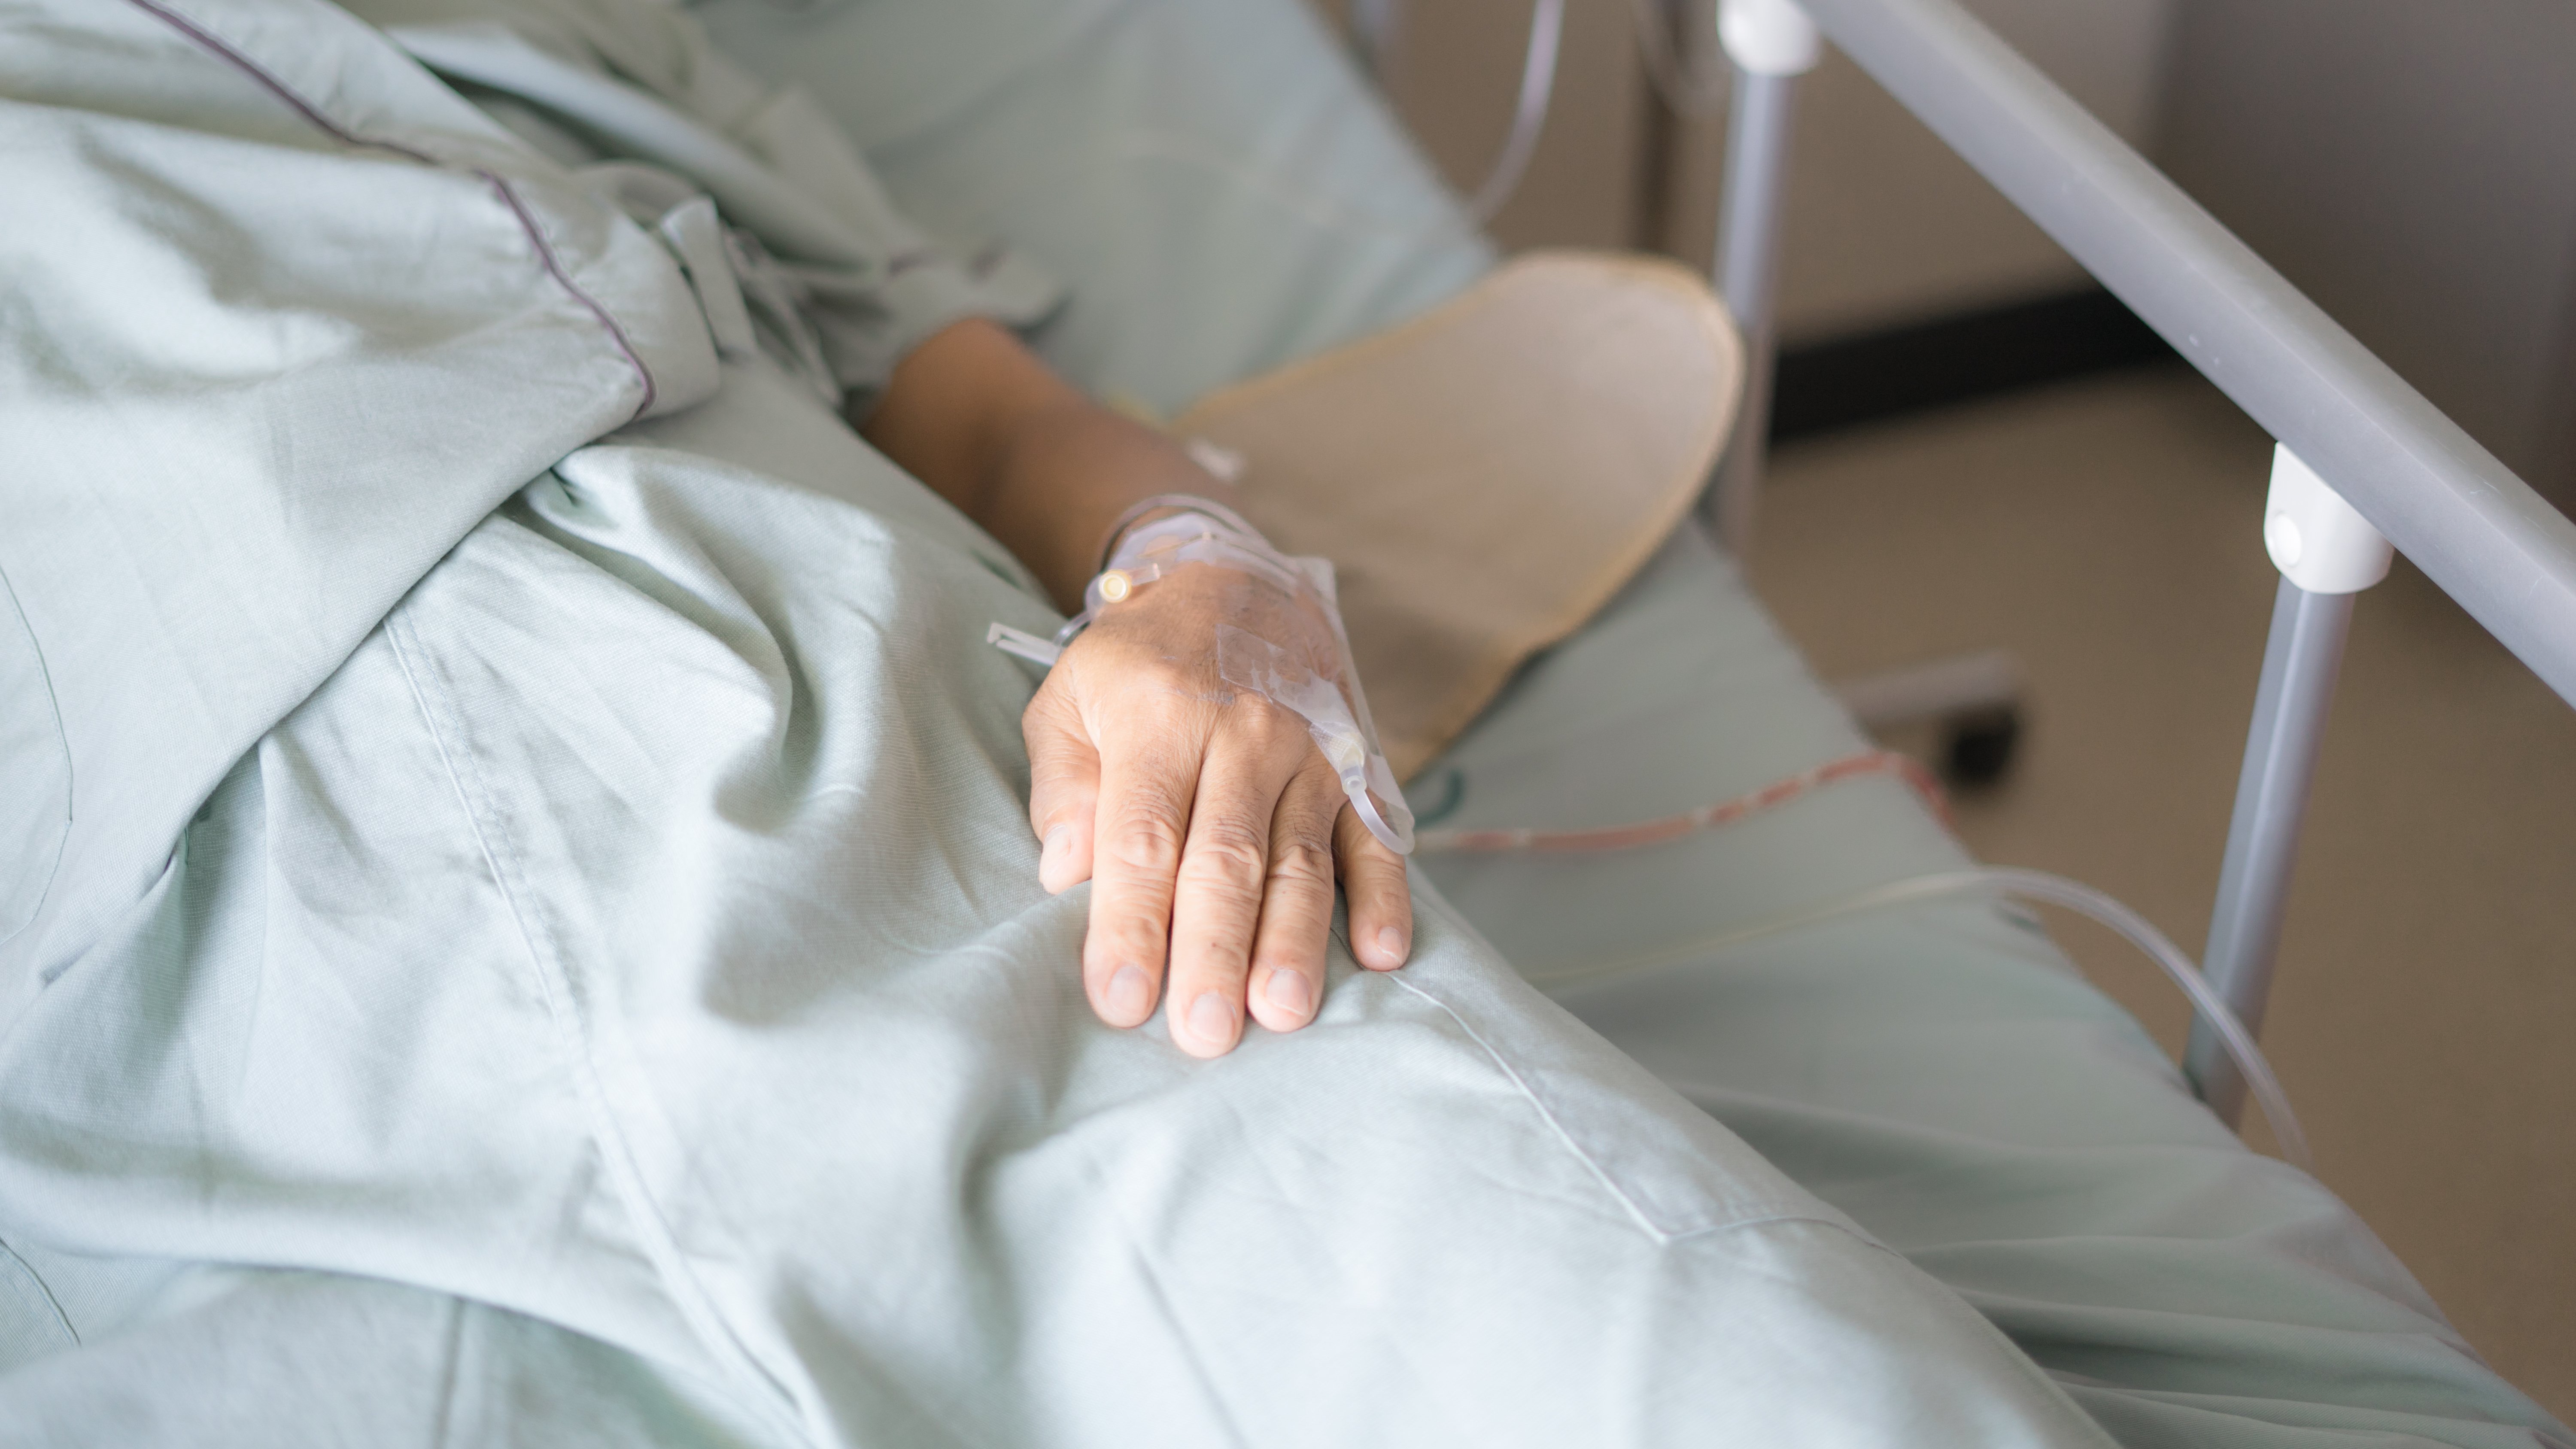 Der Patient liegt nach der Operation im Bett. | Quelle: Shutterstock